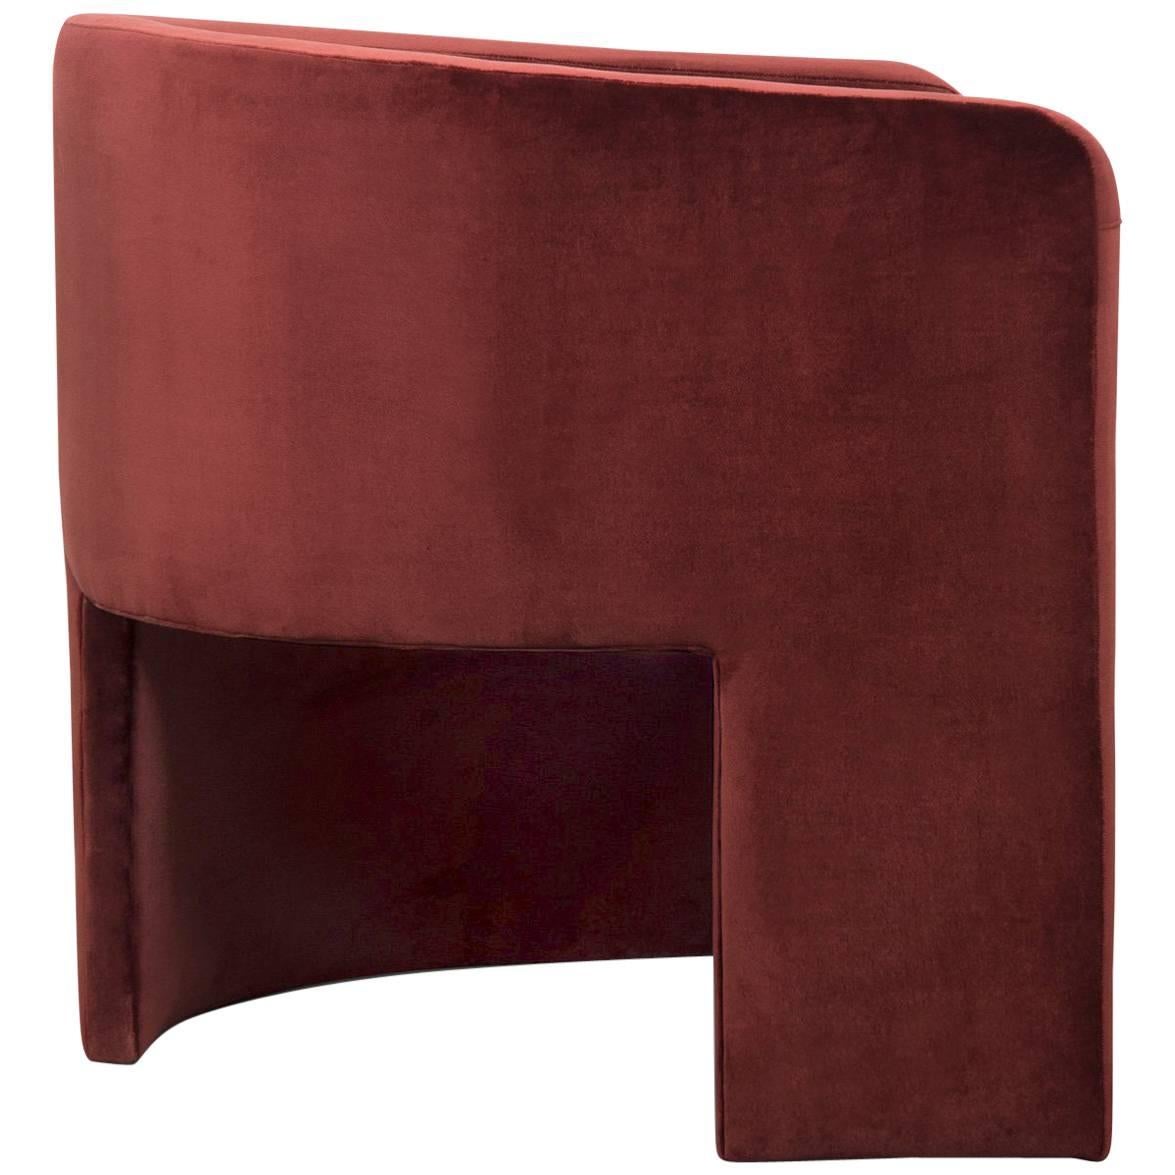 Asymmetric Modern Style Martinique Chair in Lush Bordeaux Velvet Upholstery For Sale